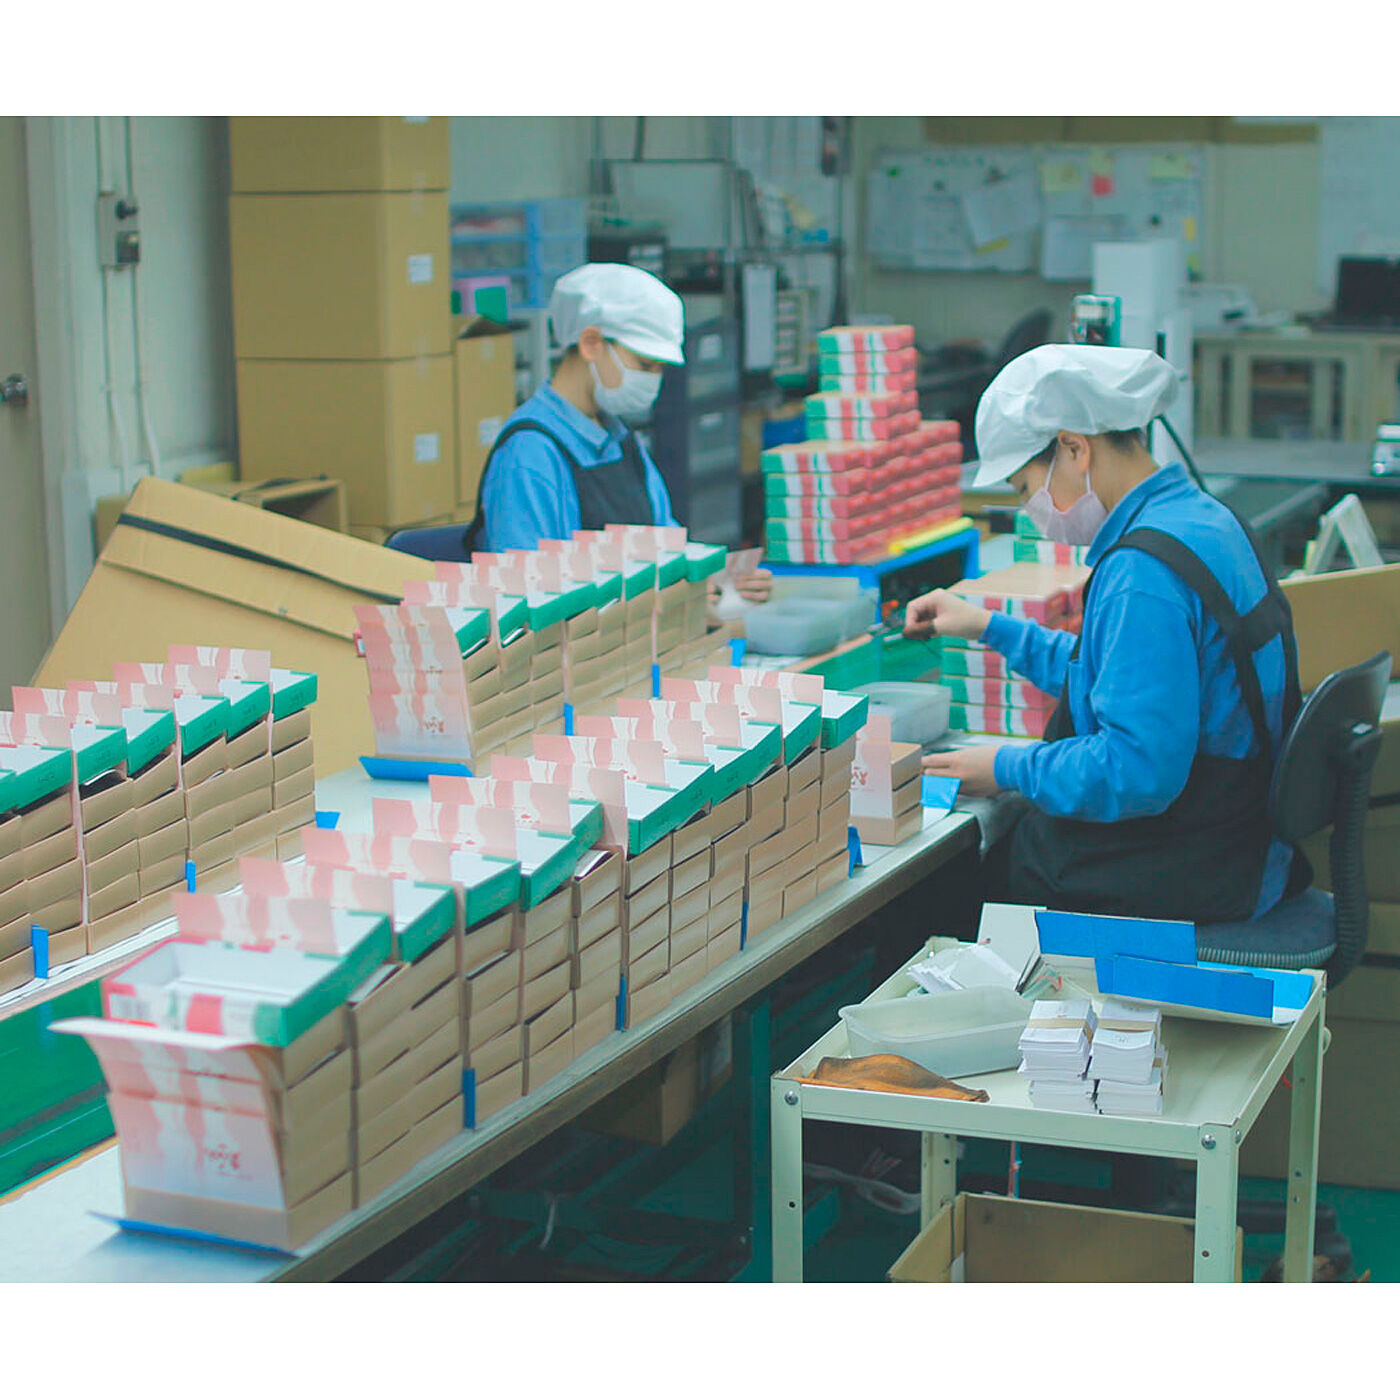 フェリシモの雑貨Kraso|KAWAII COMPANY　淡路島で128年の技術が香る ネオクラシックな糸のお香の会|工場見学の様子は、KAWAII COMPANYのnoteでご紹介しています。ぜひご覧ください♪